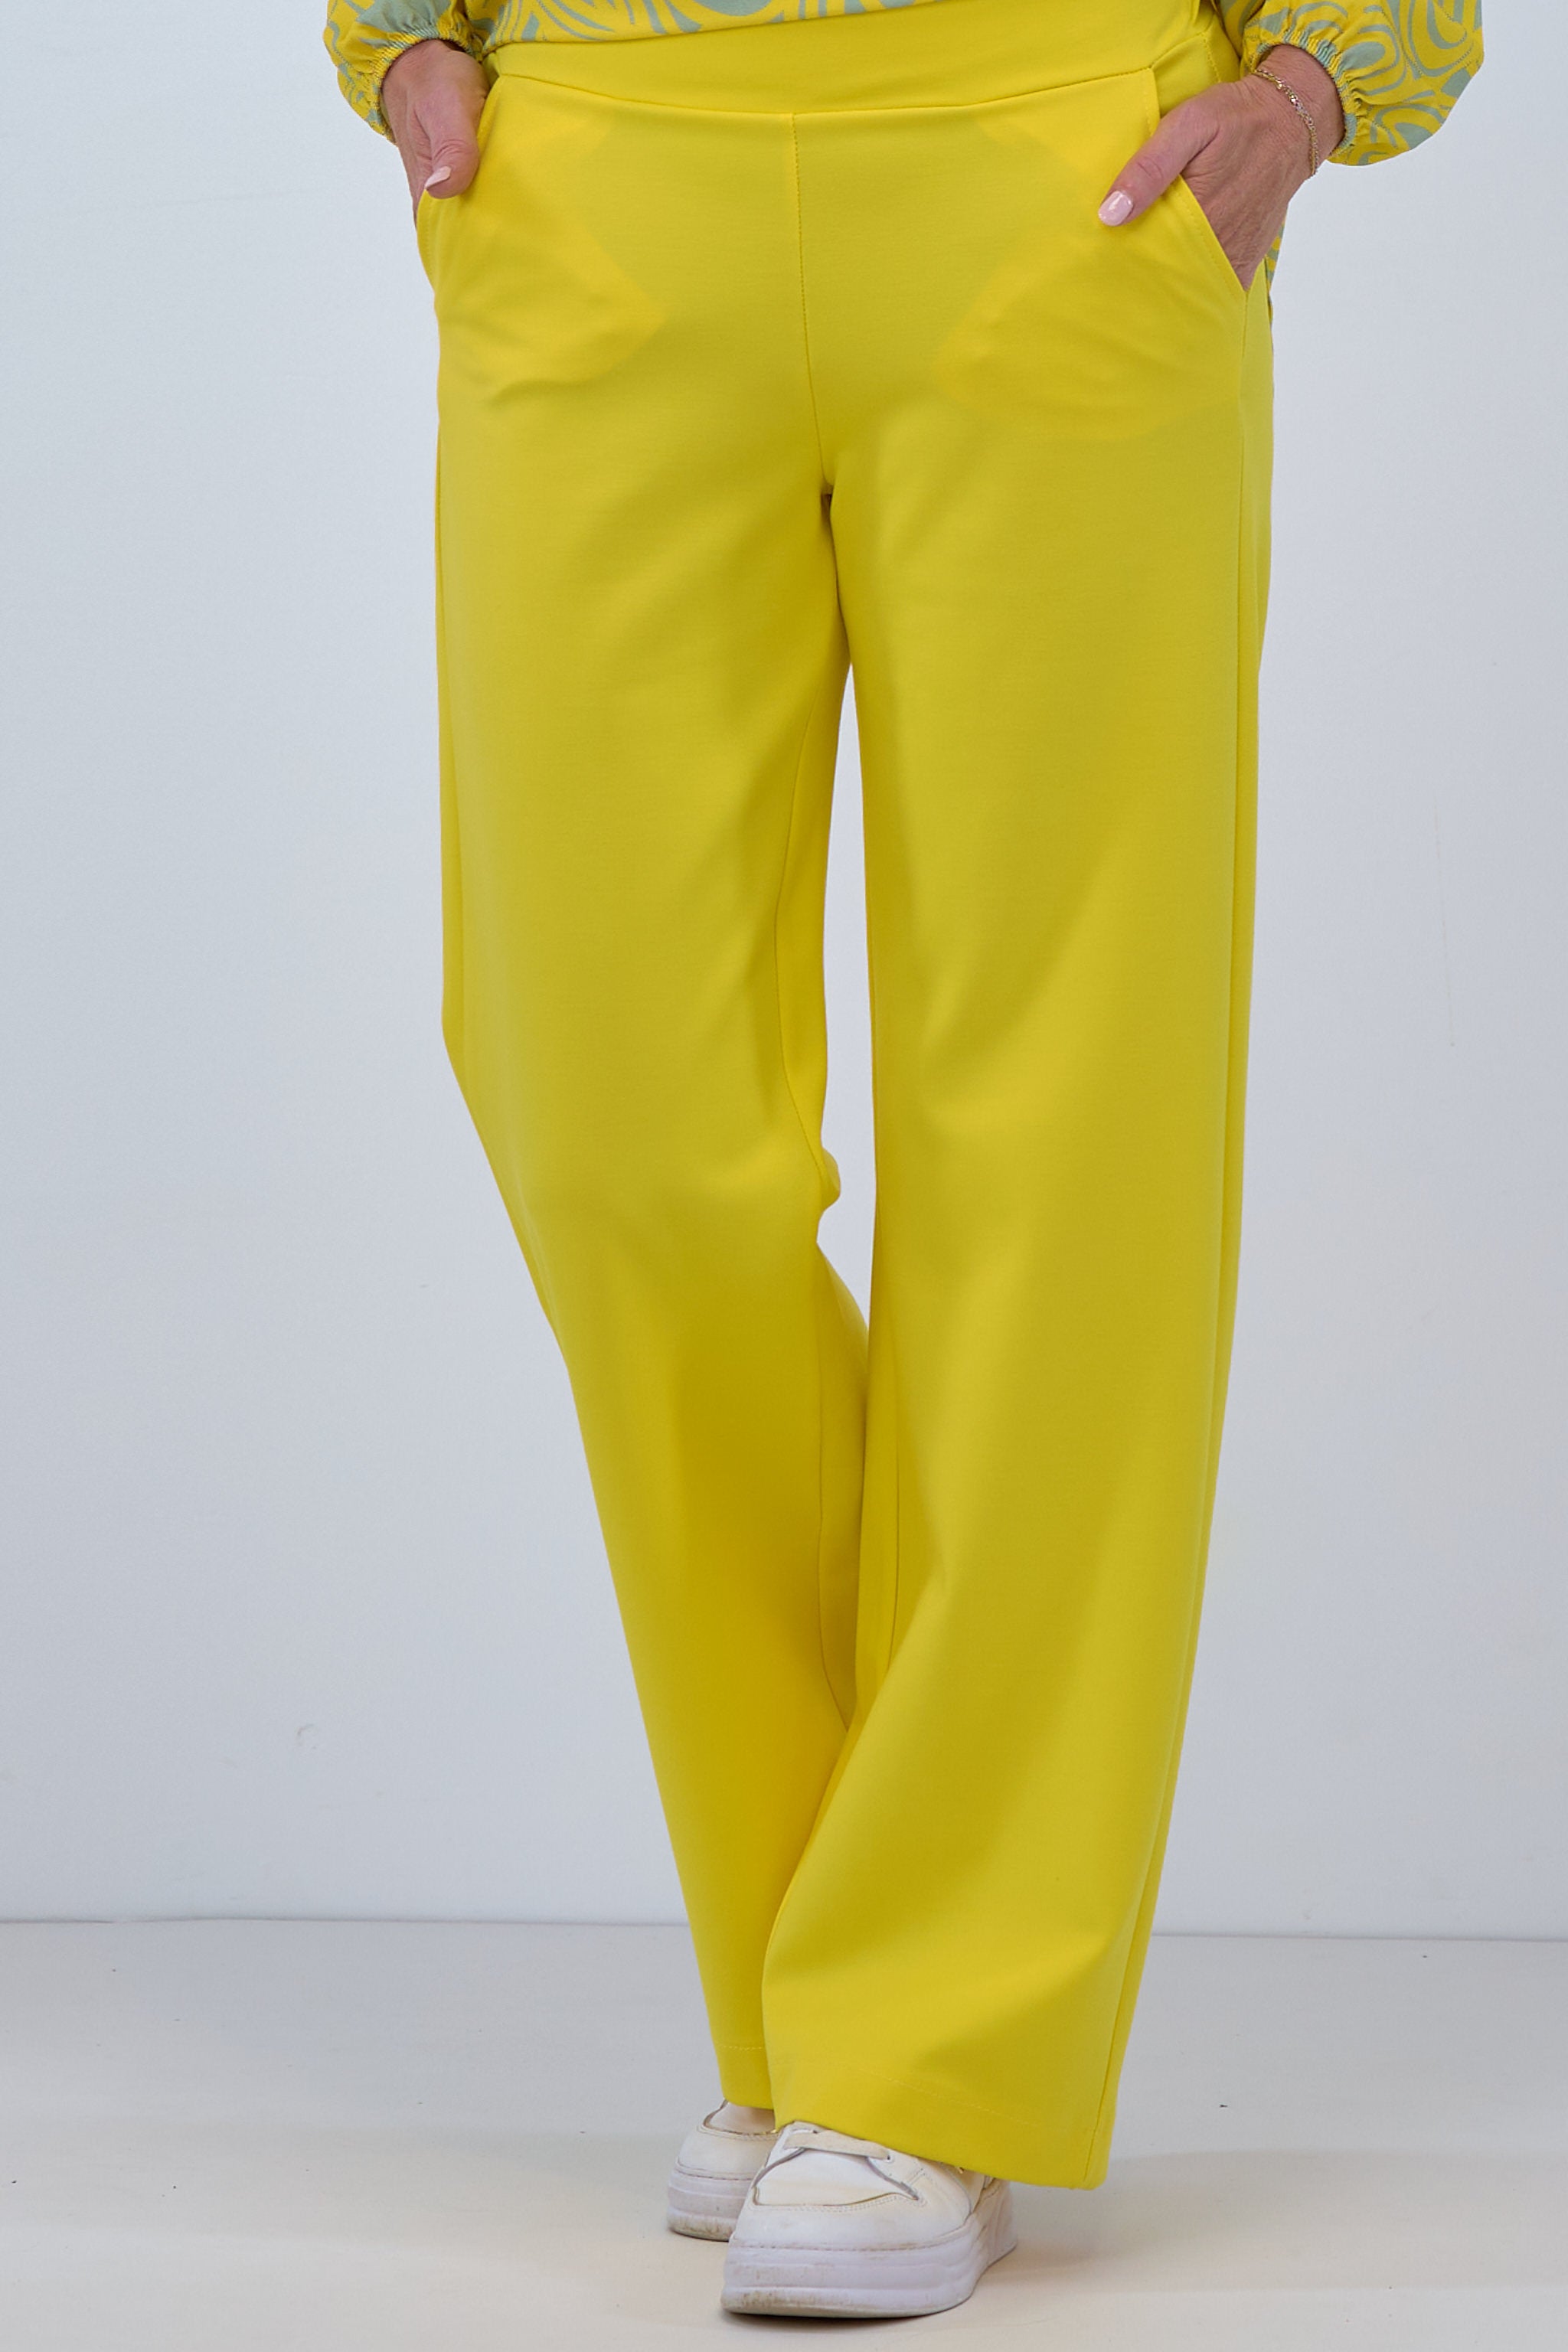 Damen Anzughose gelb von Trends & Lifestyle